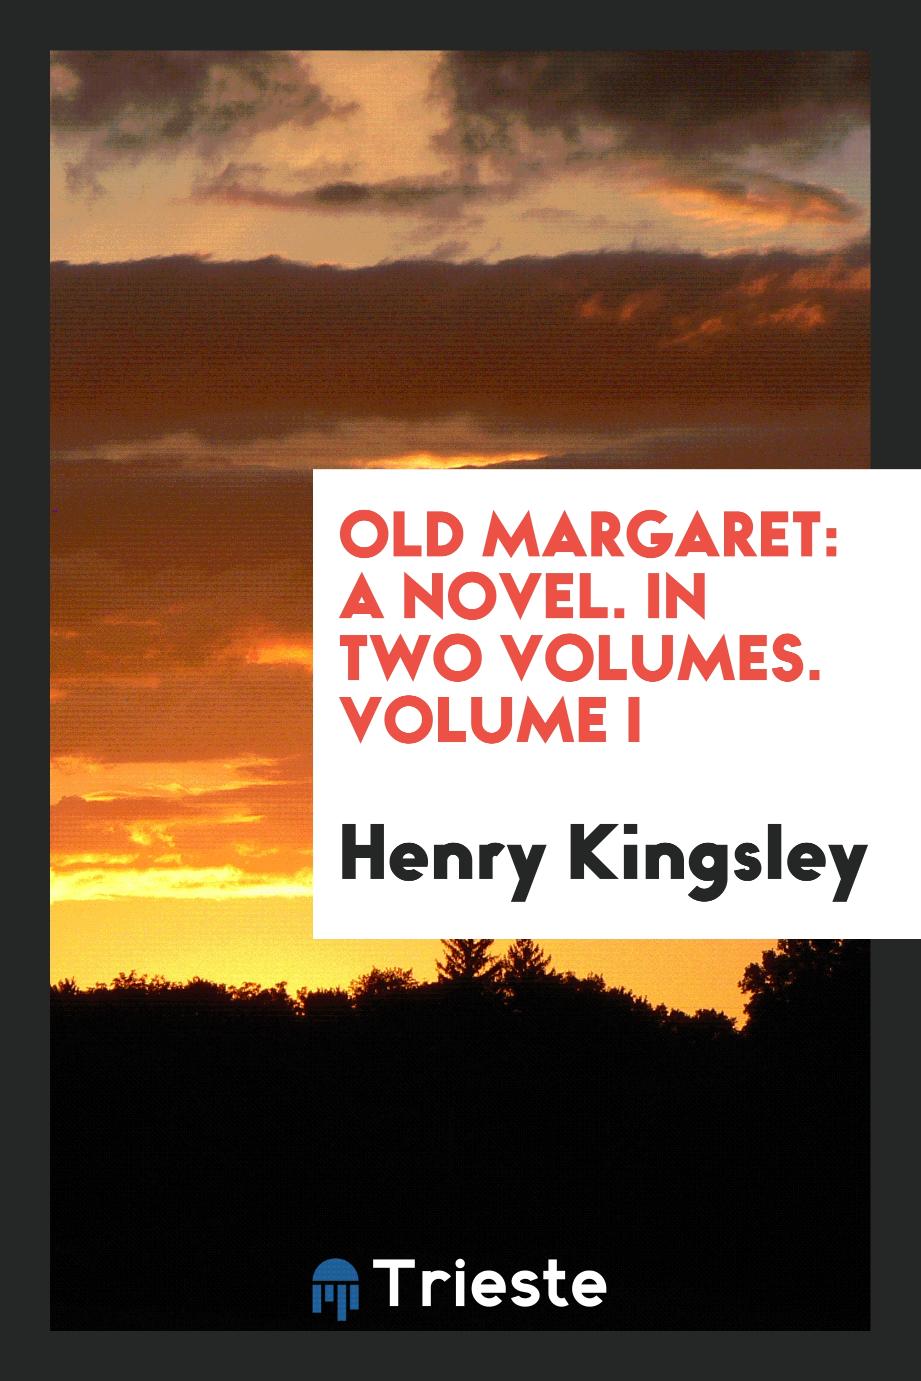 Old Margaret: a novel. In two volumes. Volume I